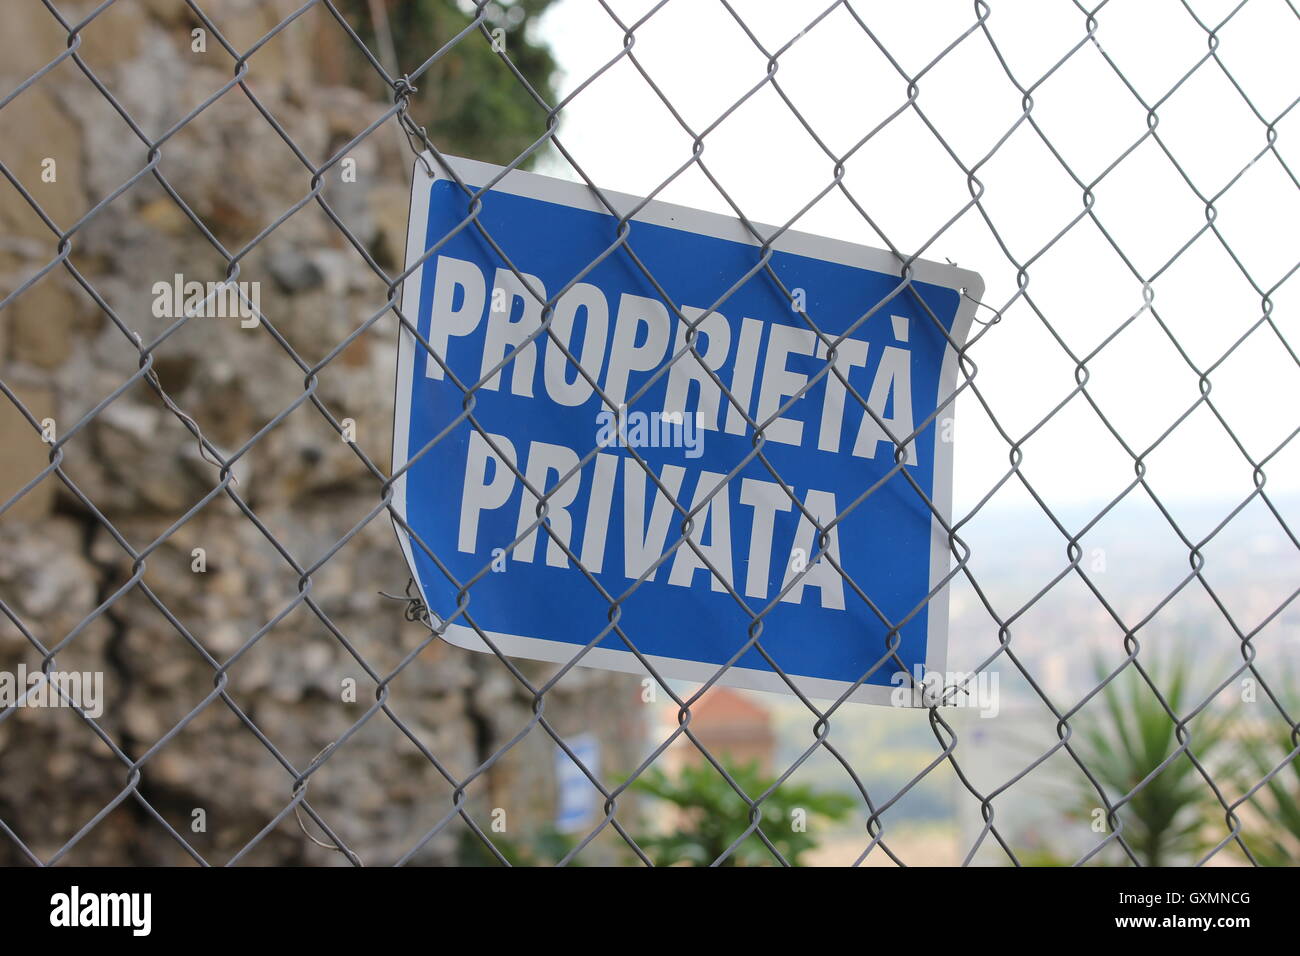 cartello propietà privata, private property sign on fence, Tivoli, Italy Stock Photo